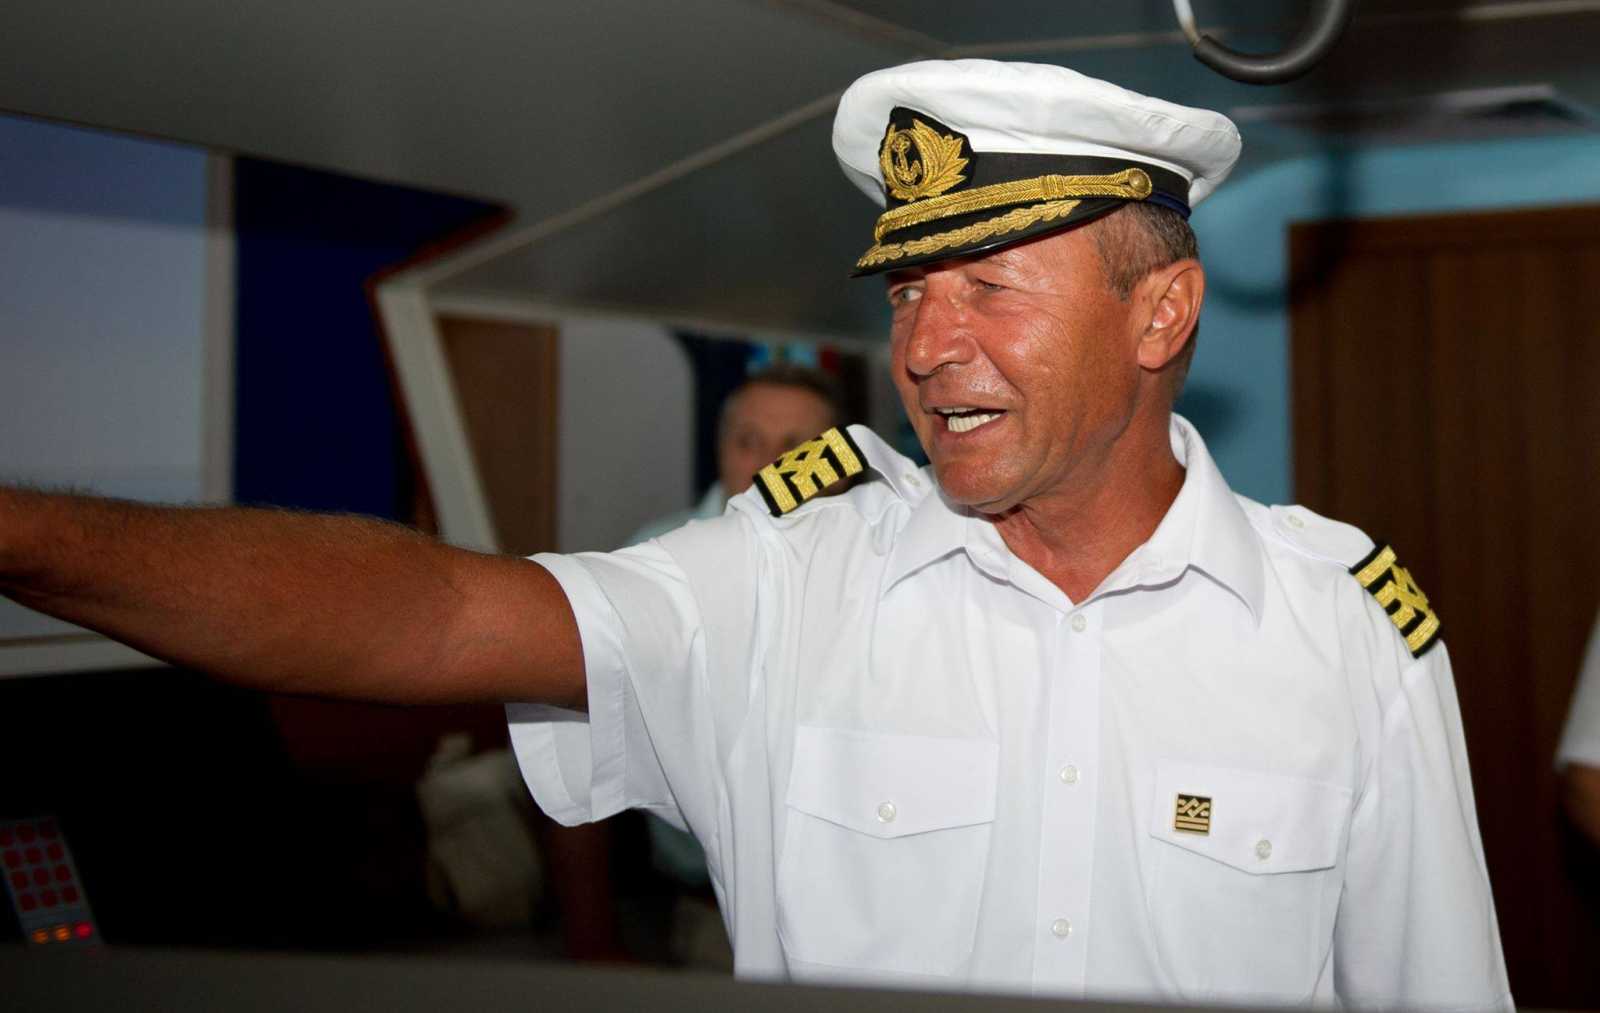 Távozik a politikából az egykori hajóskapitány Fotó: Traian Basescu Facebook oldala